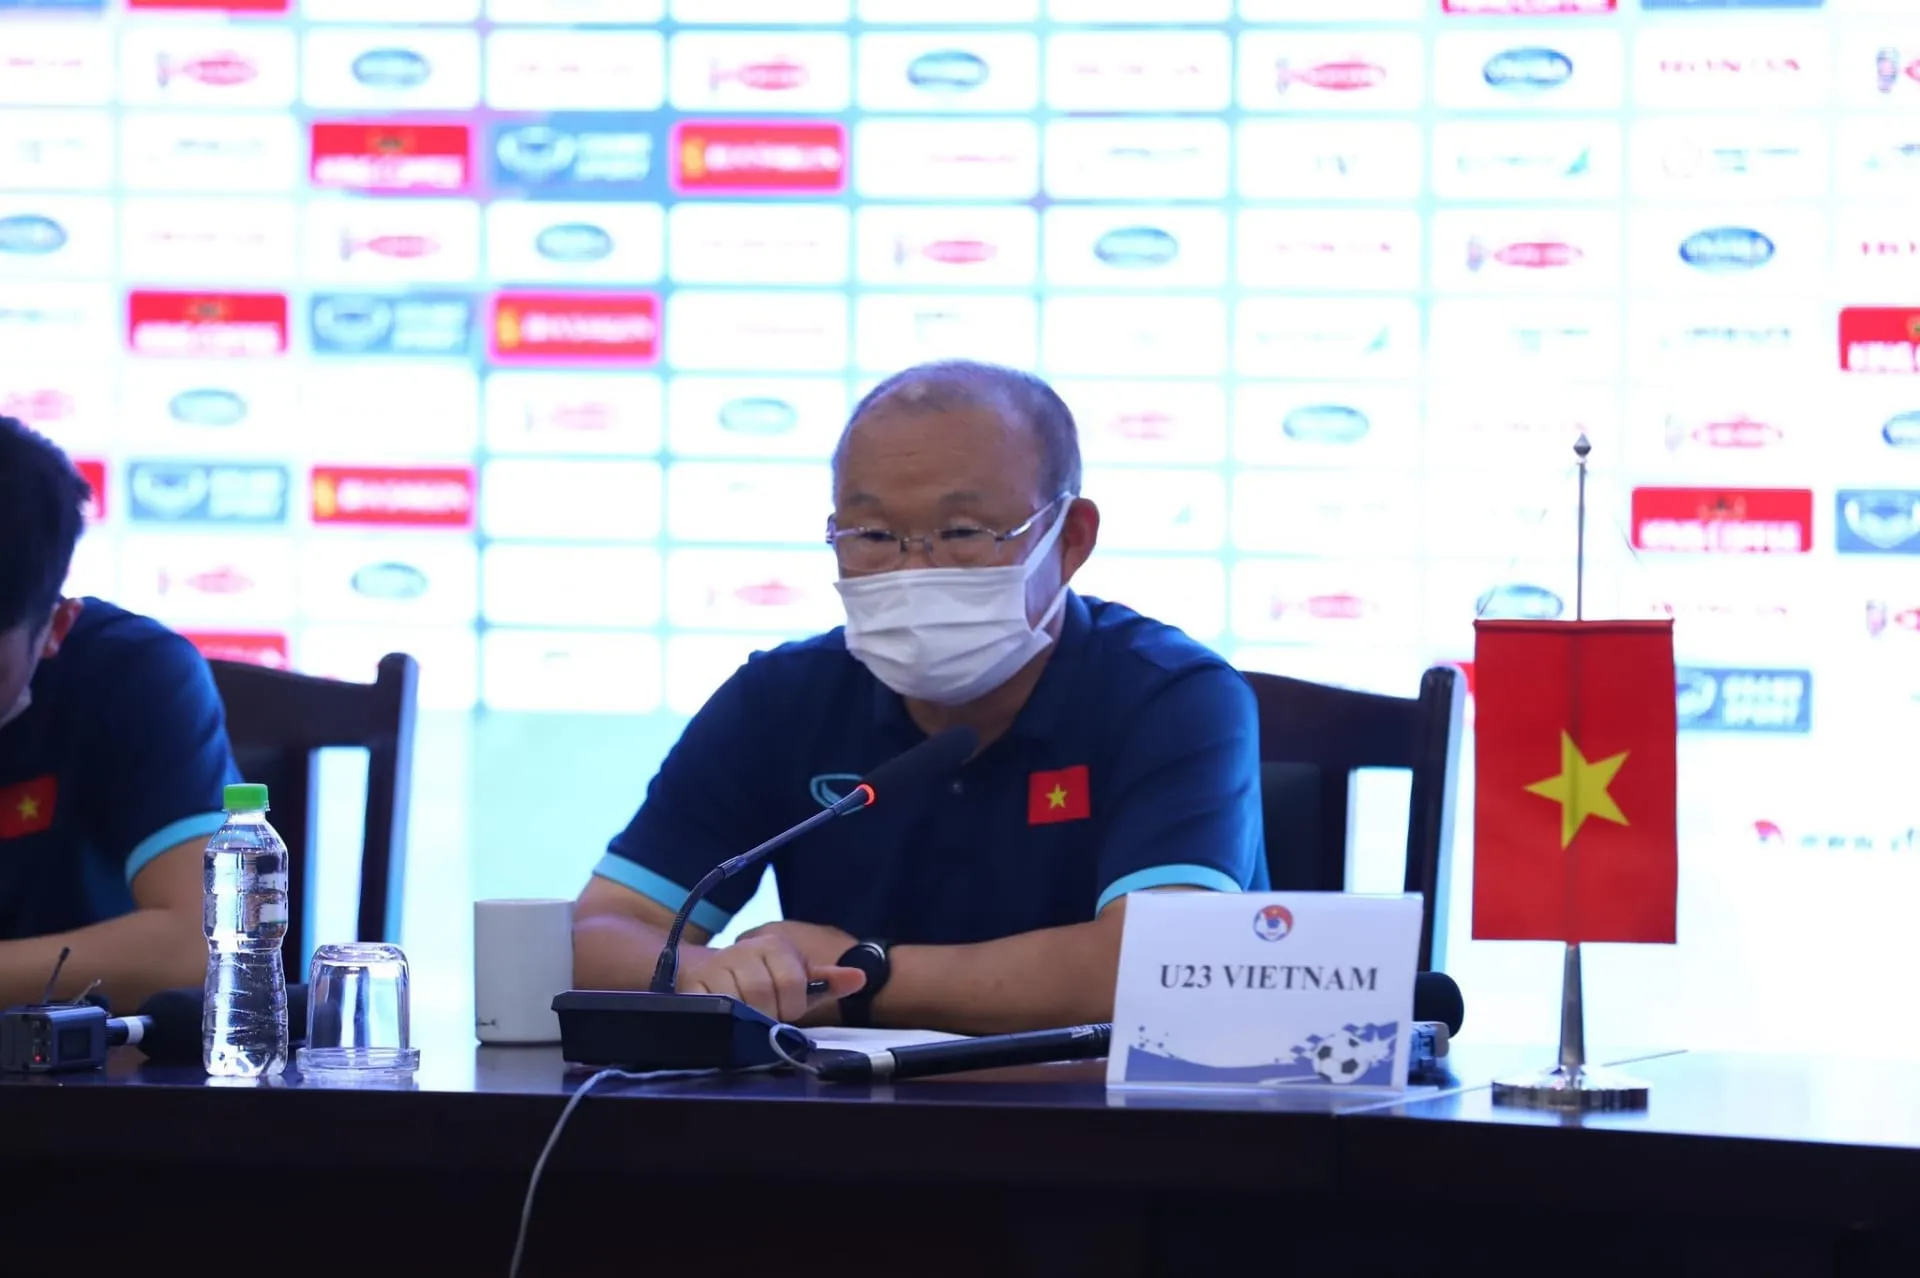 Tuấn Hải lập cú đú giúp ĐT Việt Nam hạ Afghanistan - Thầy trò HLV Park nhận quà từ FIFA